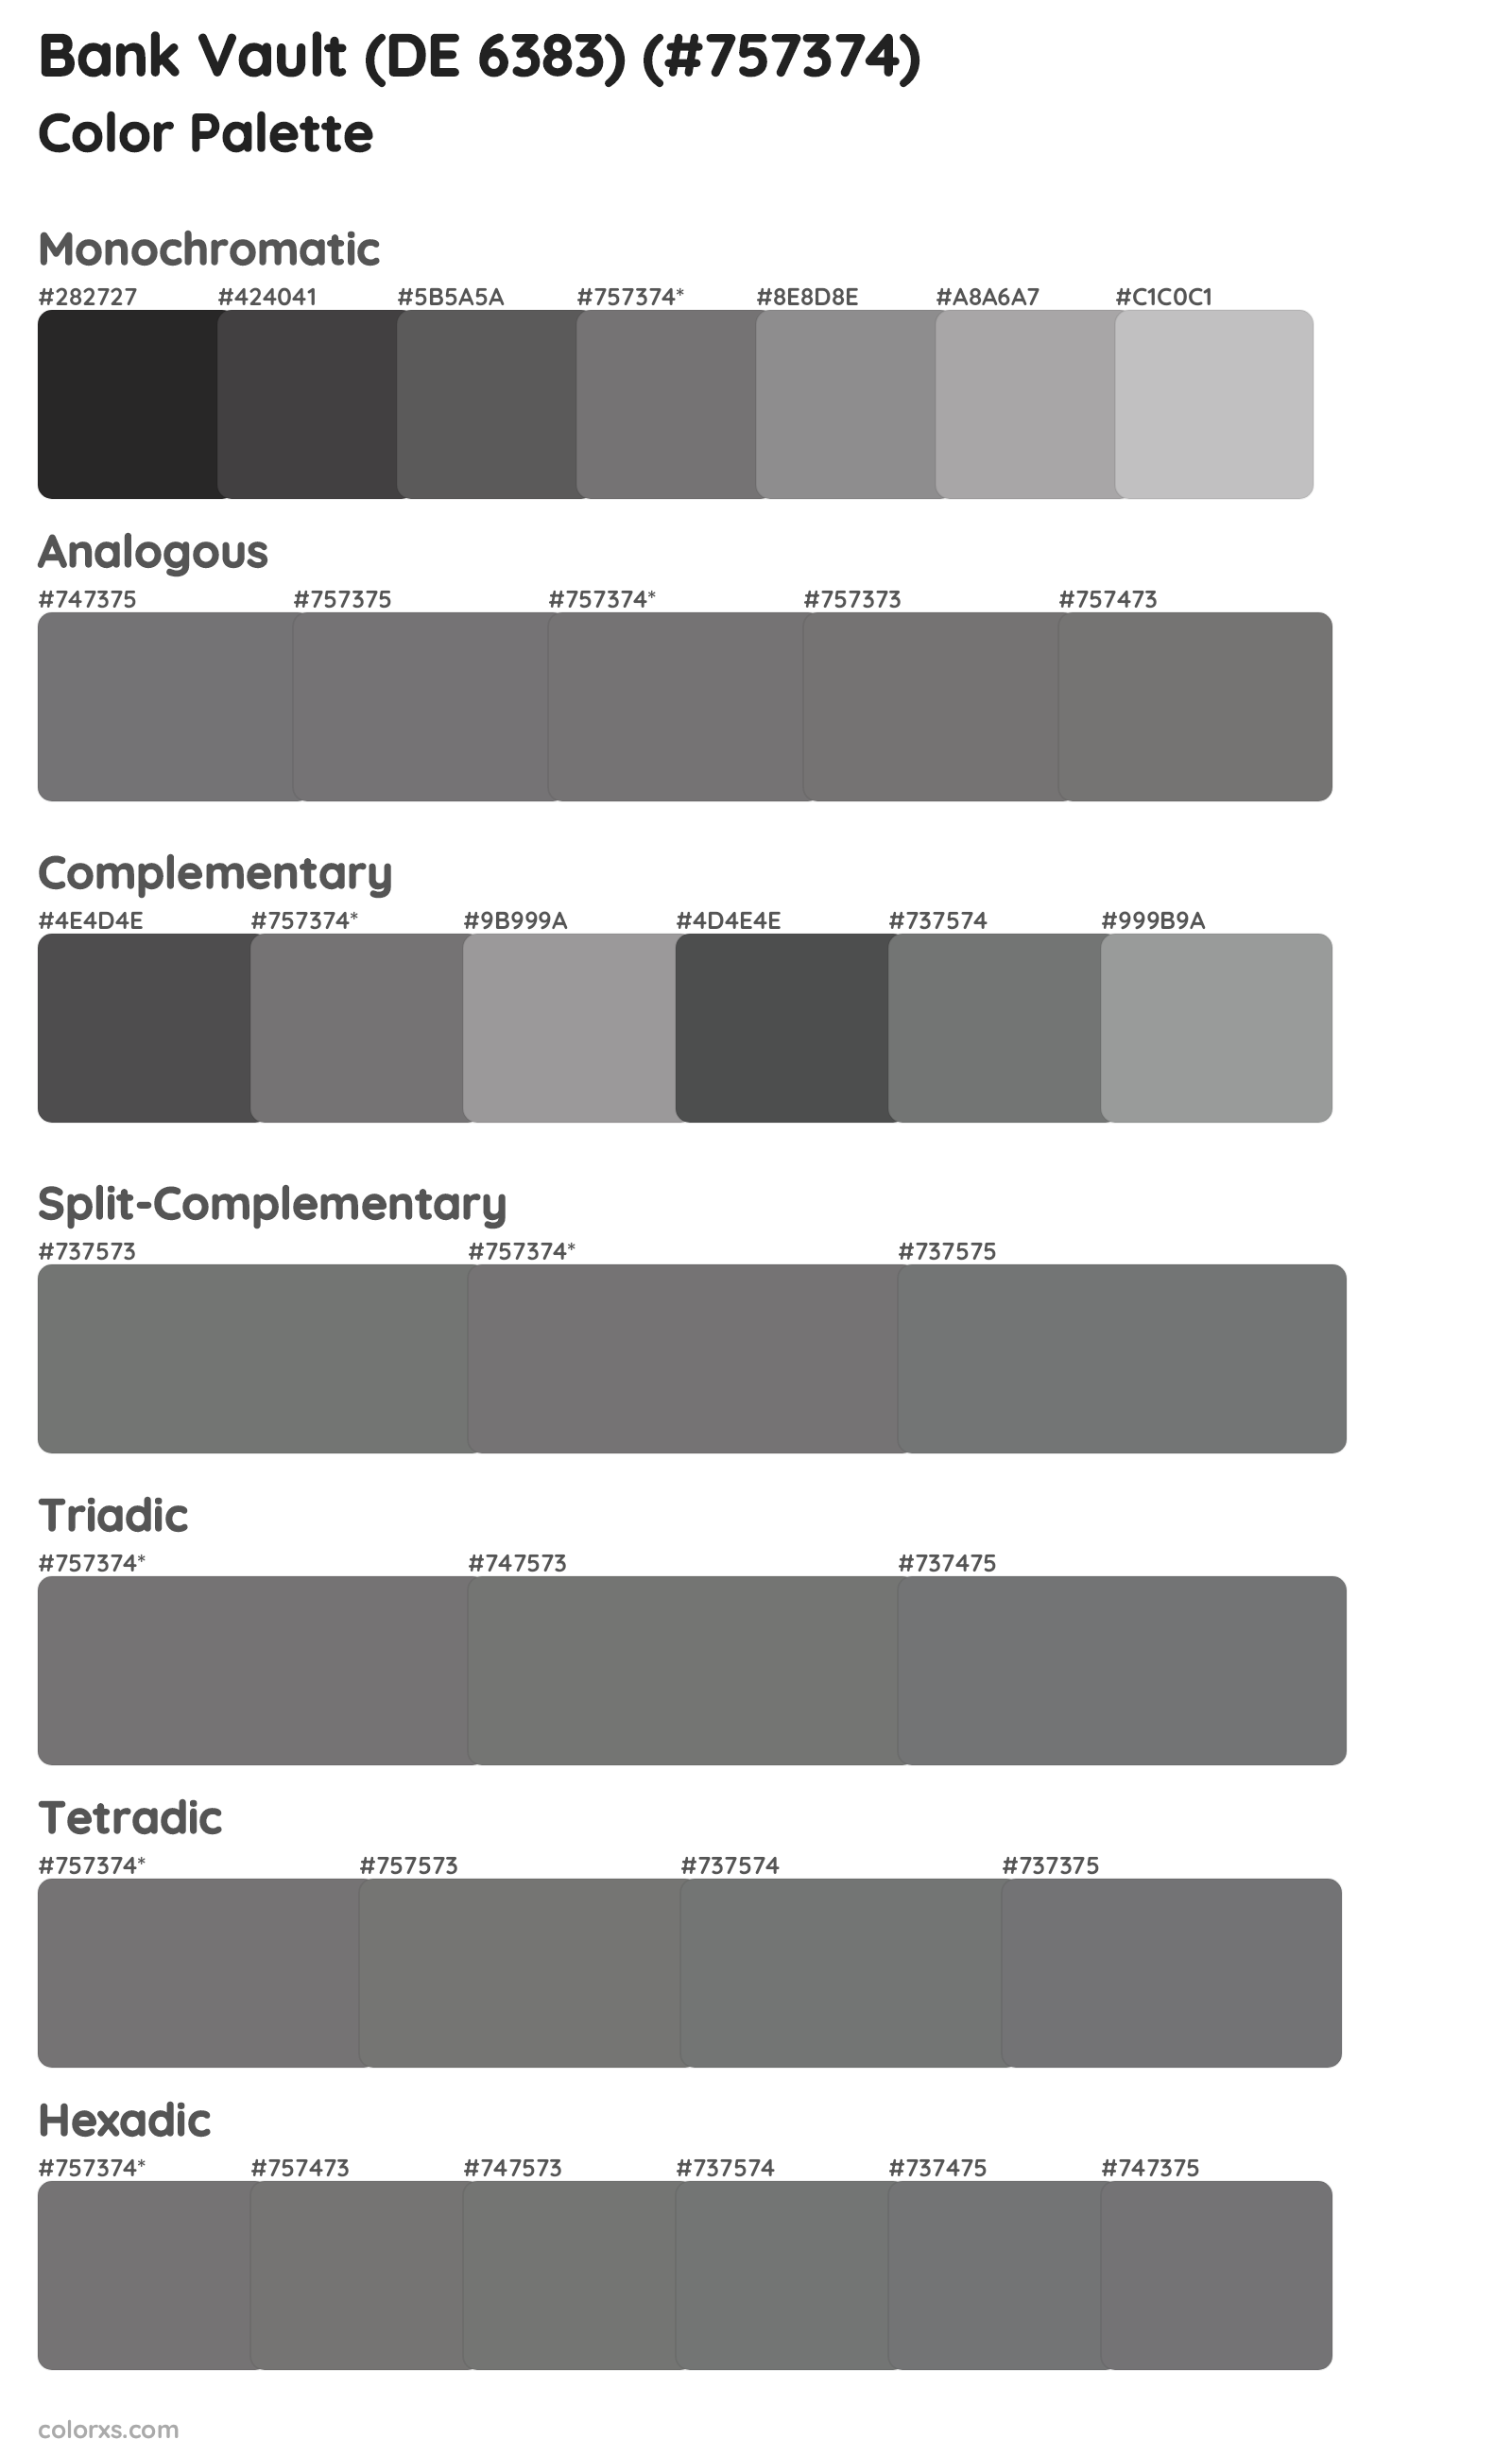 Bank Vault (DE 6383) Color Scheme Palettes